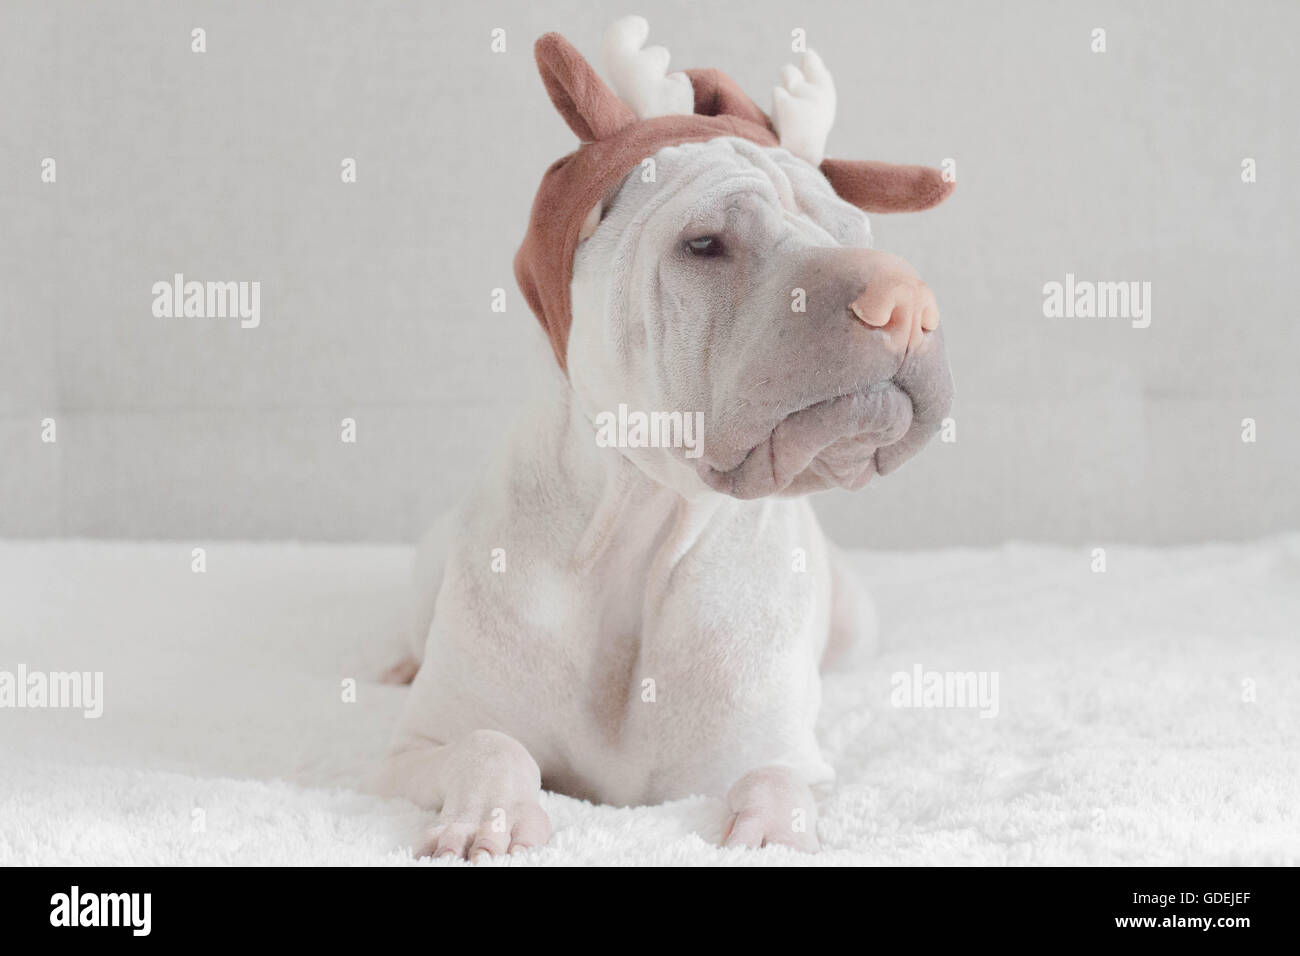 shar pei wearing reindeer antlers Stock Photo